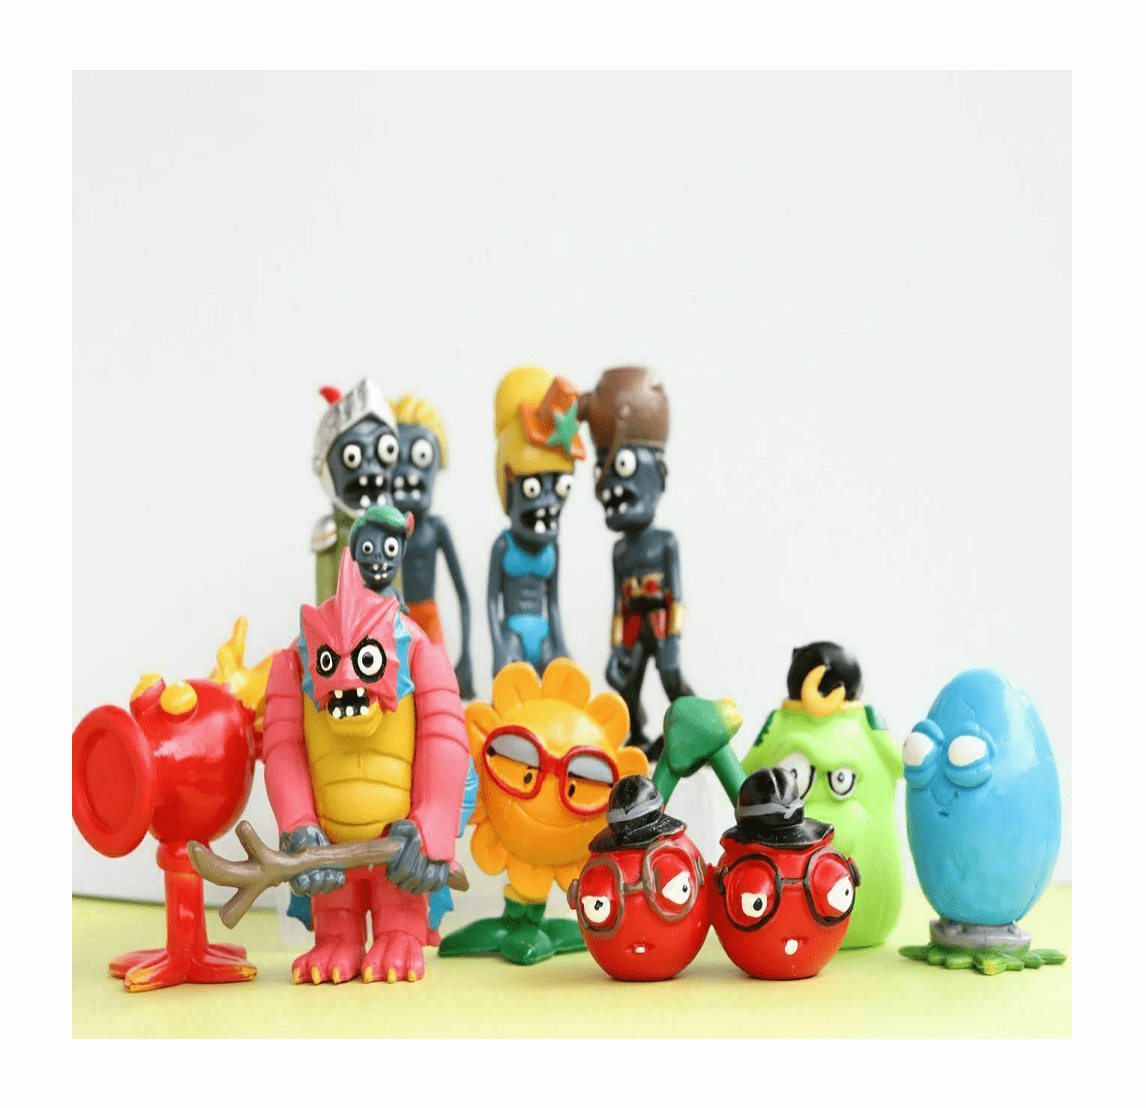 Plants vs Zombies PVC Action Figures Toys Gift Set /Zombie Figure